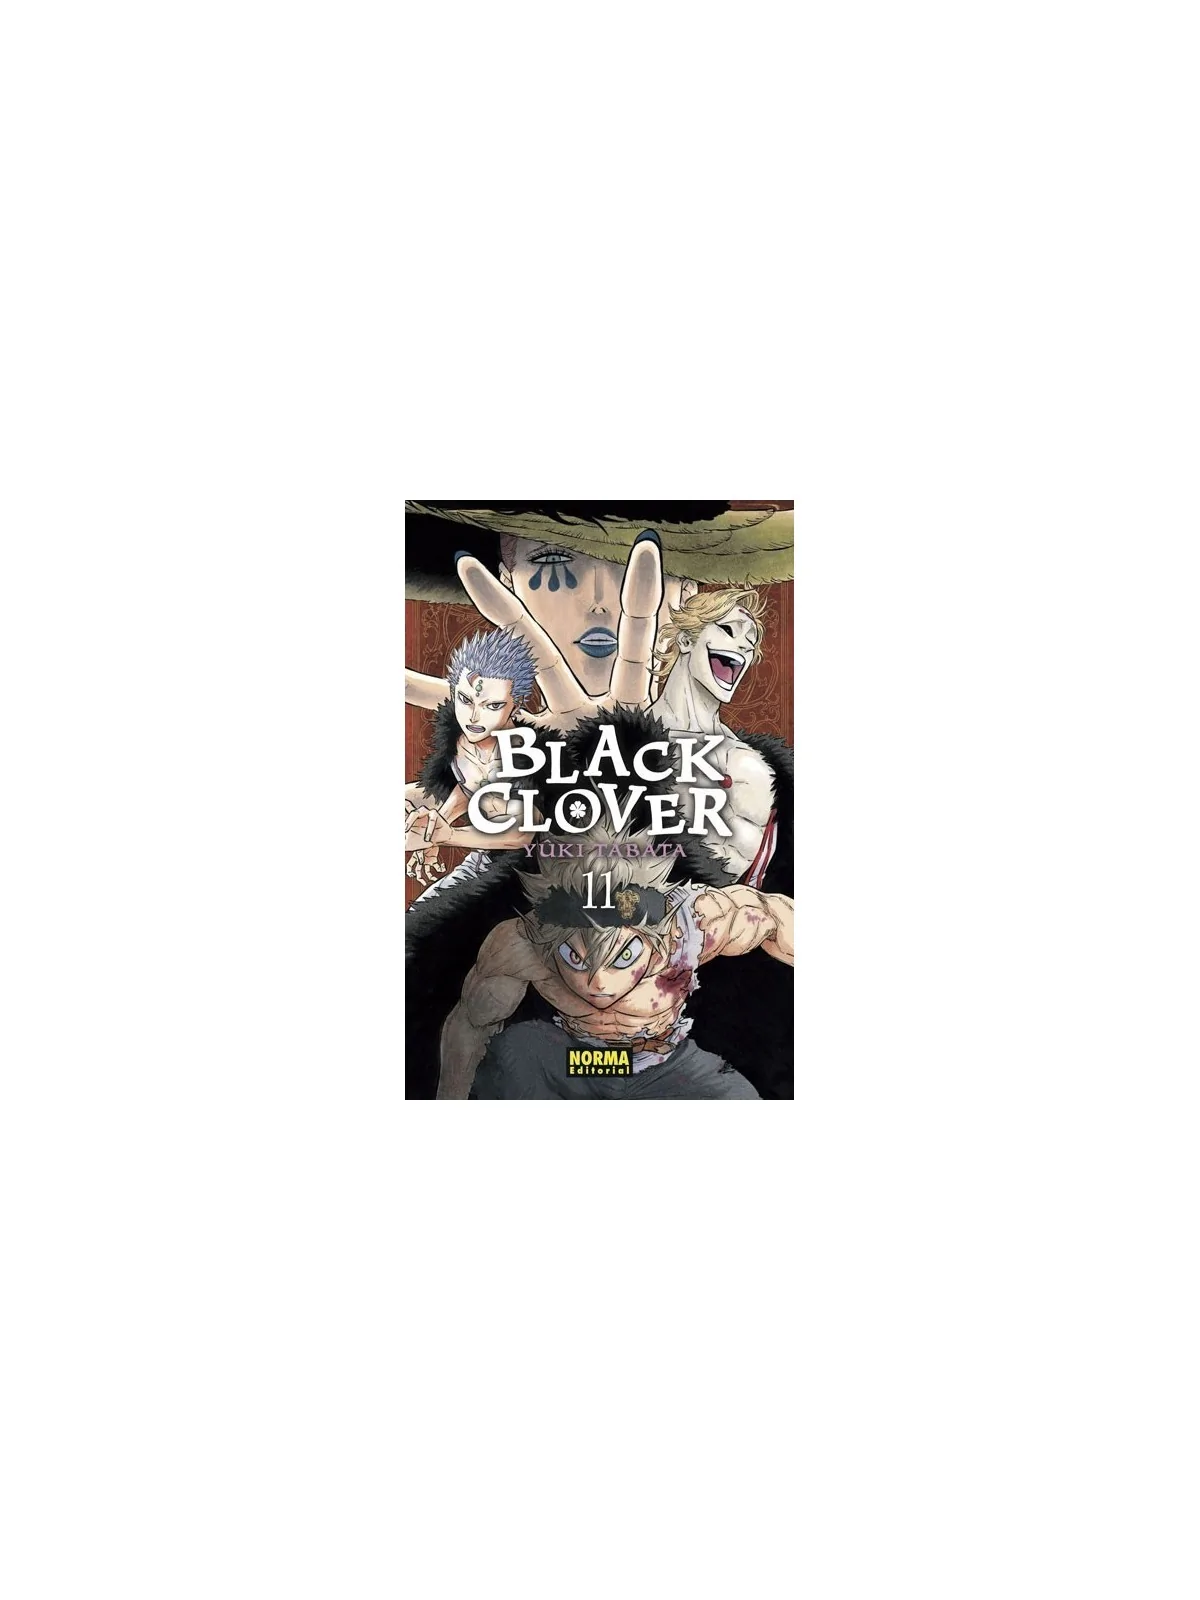 Comprar Black Clover 11 barato al mejor precio 7,60 € de Norma Editori